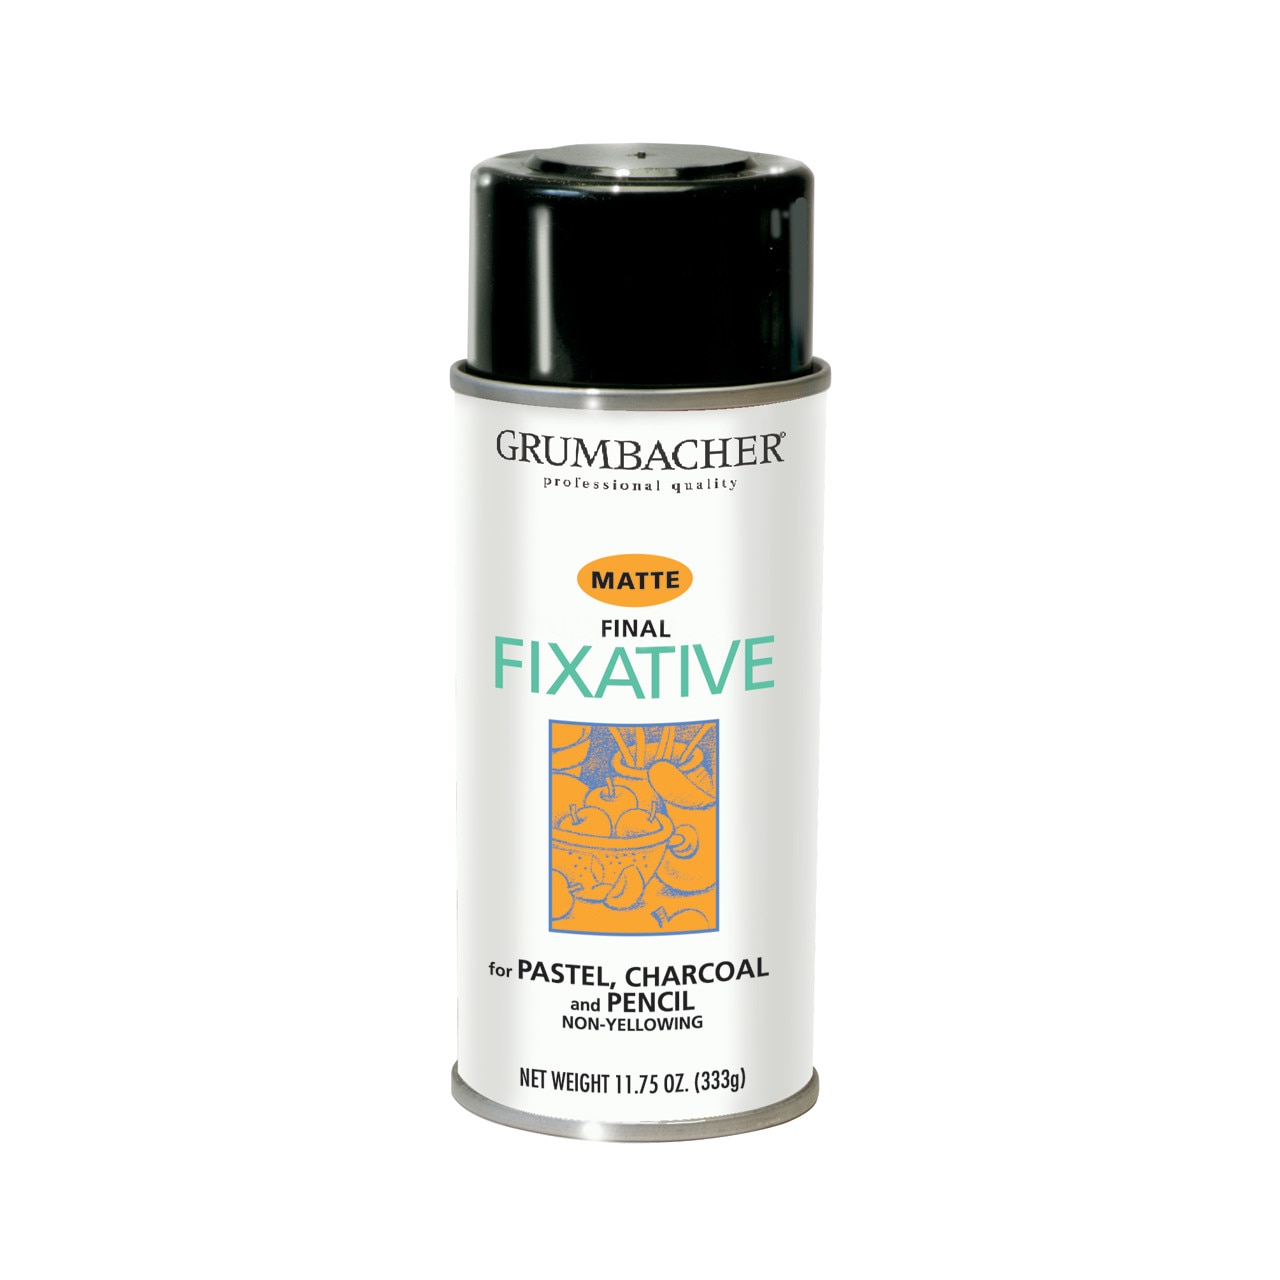 Grumbacher Final Fixative Spray, 11.75 oz., Matte